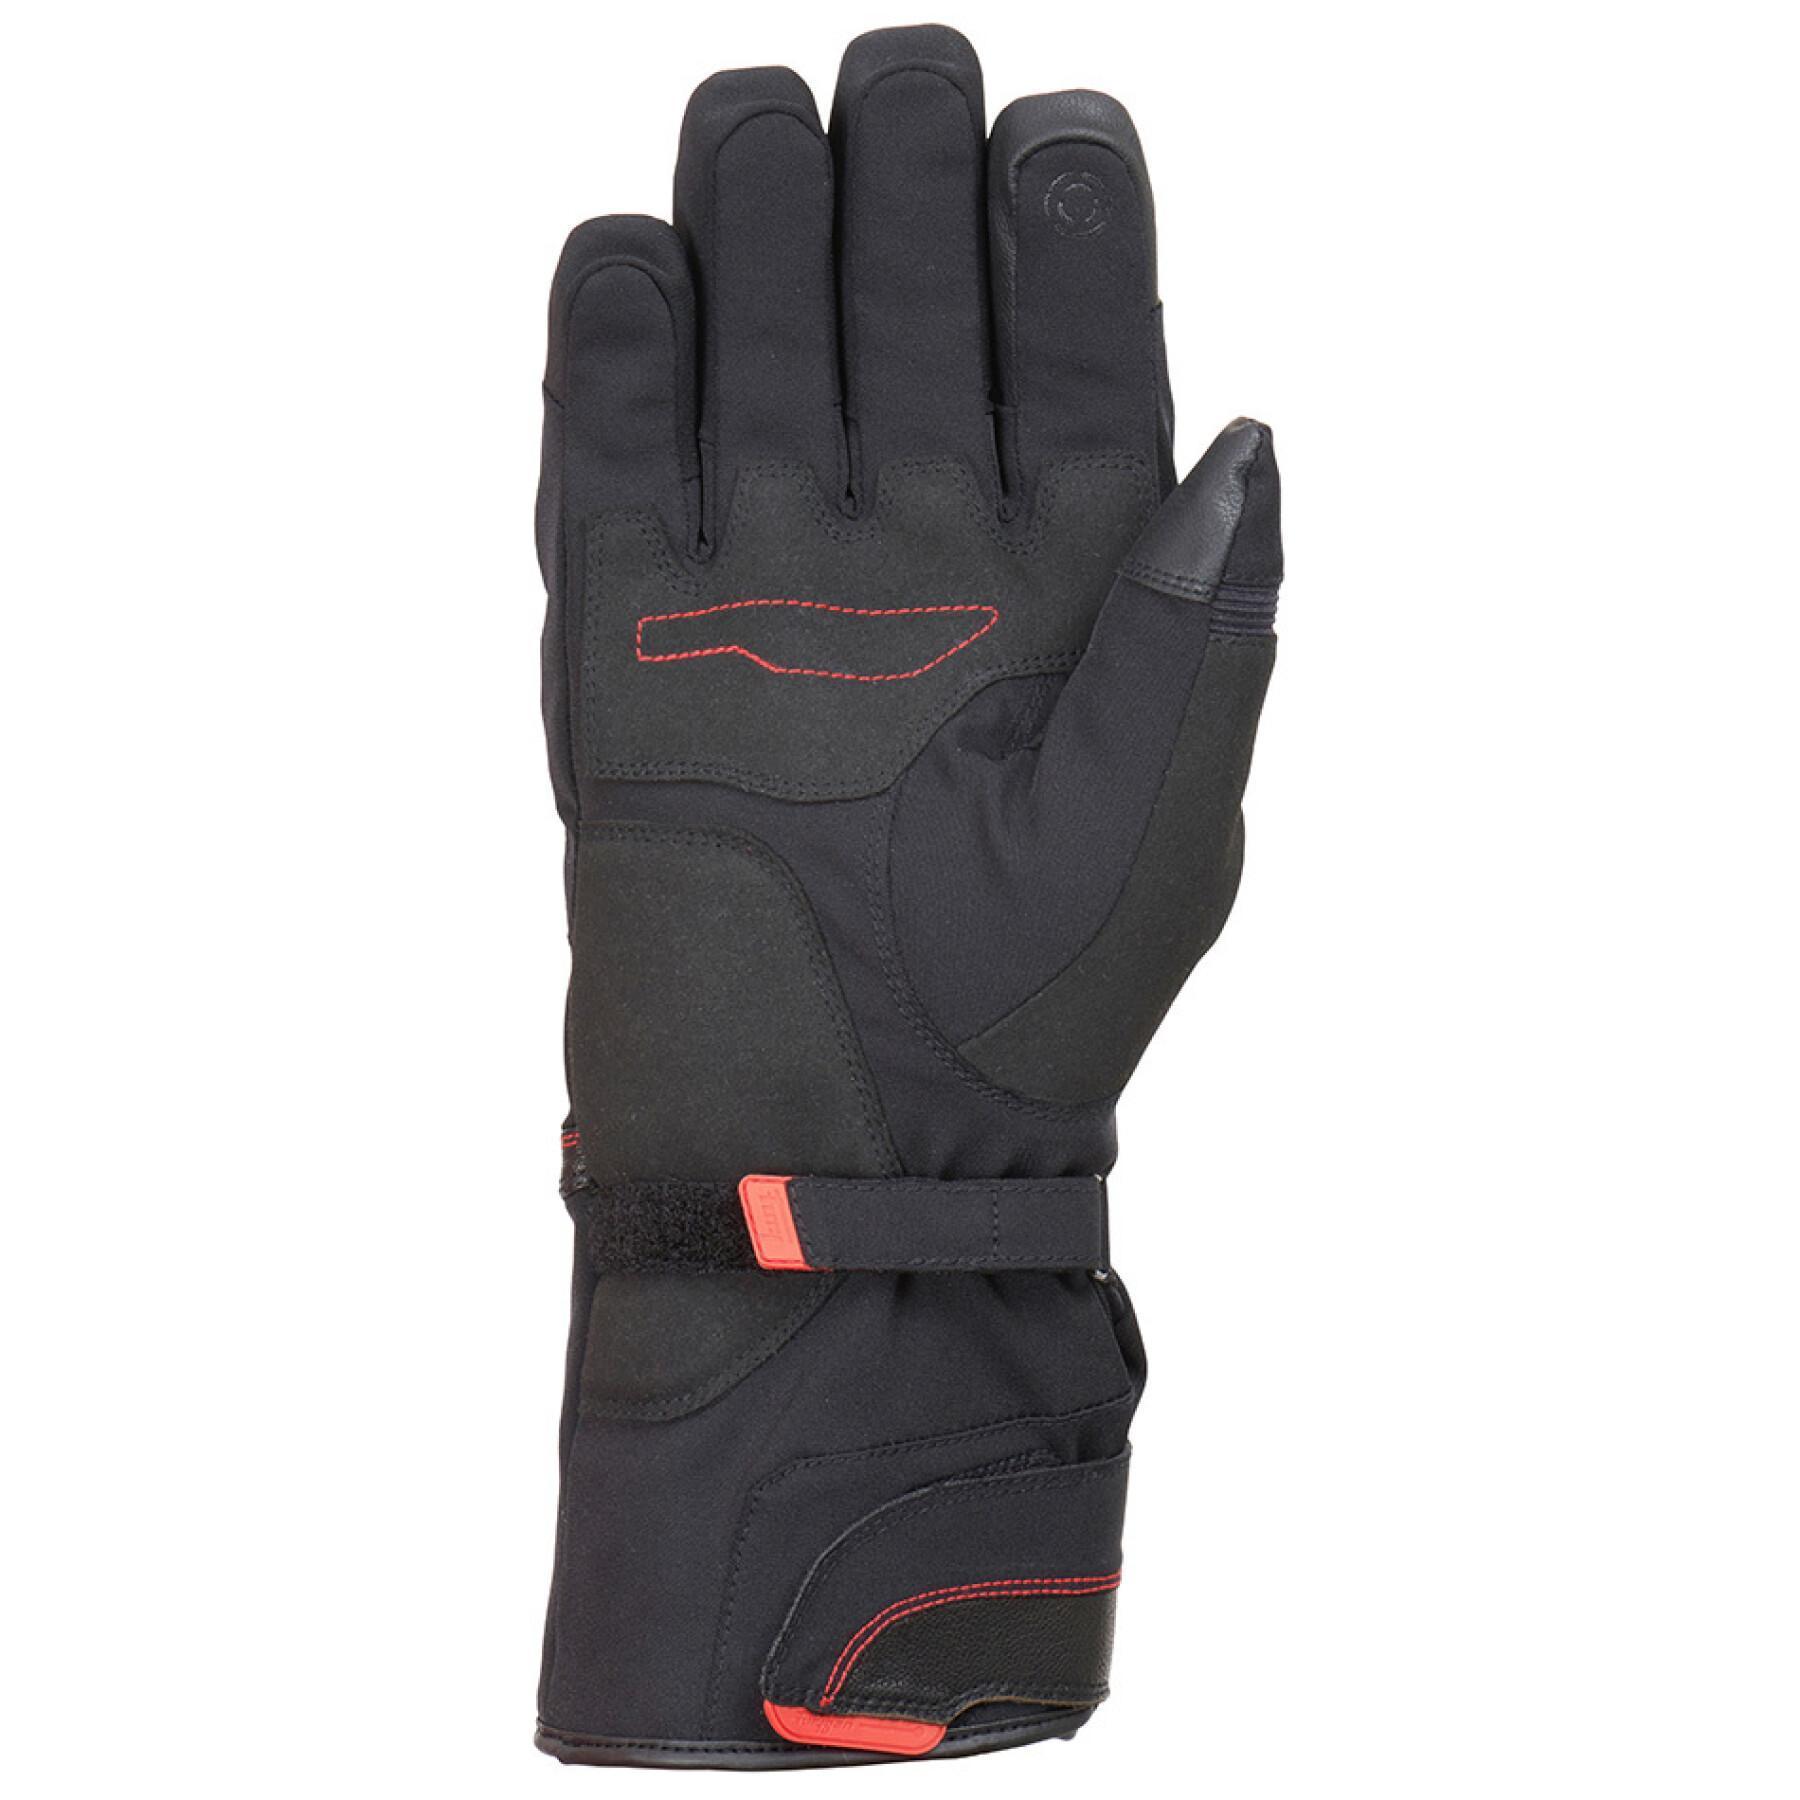 Heated motorcycle gloves Furygan Heat Genesis